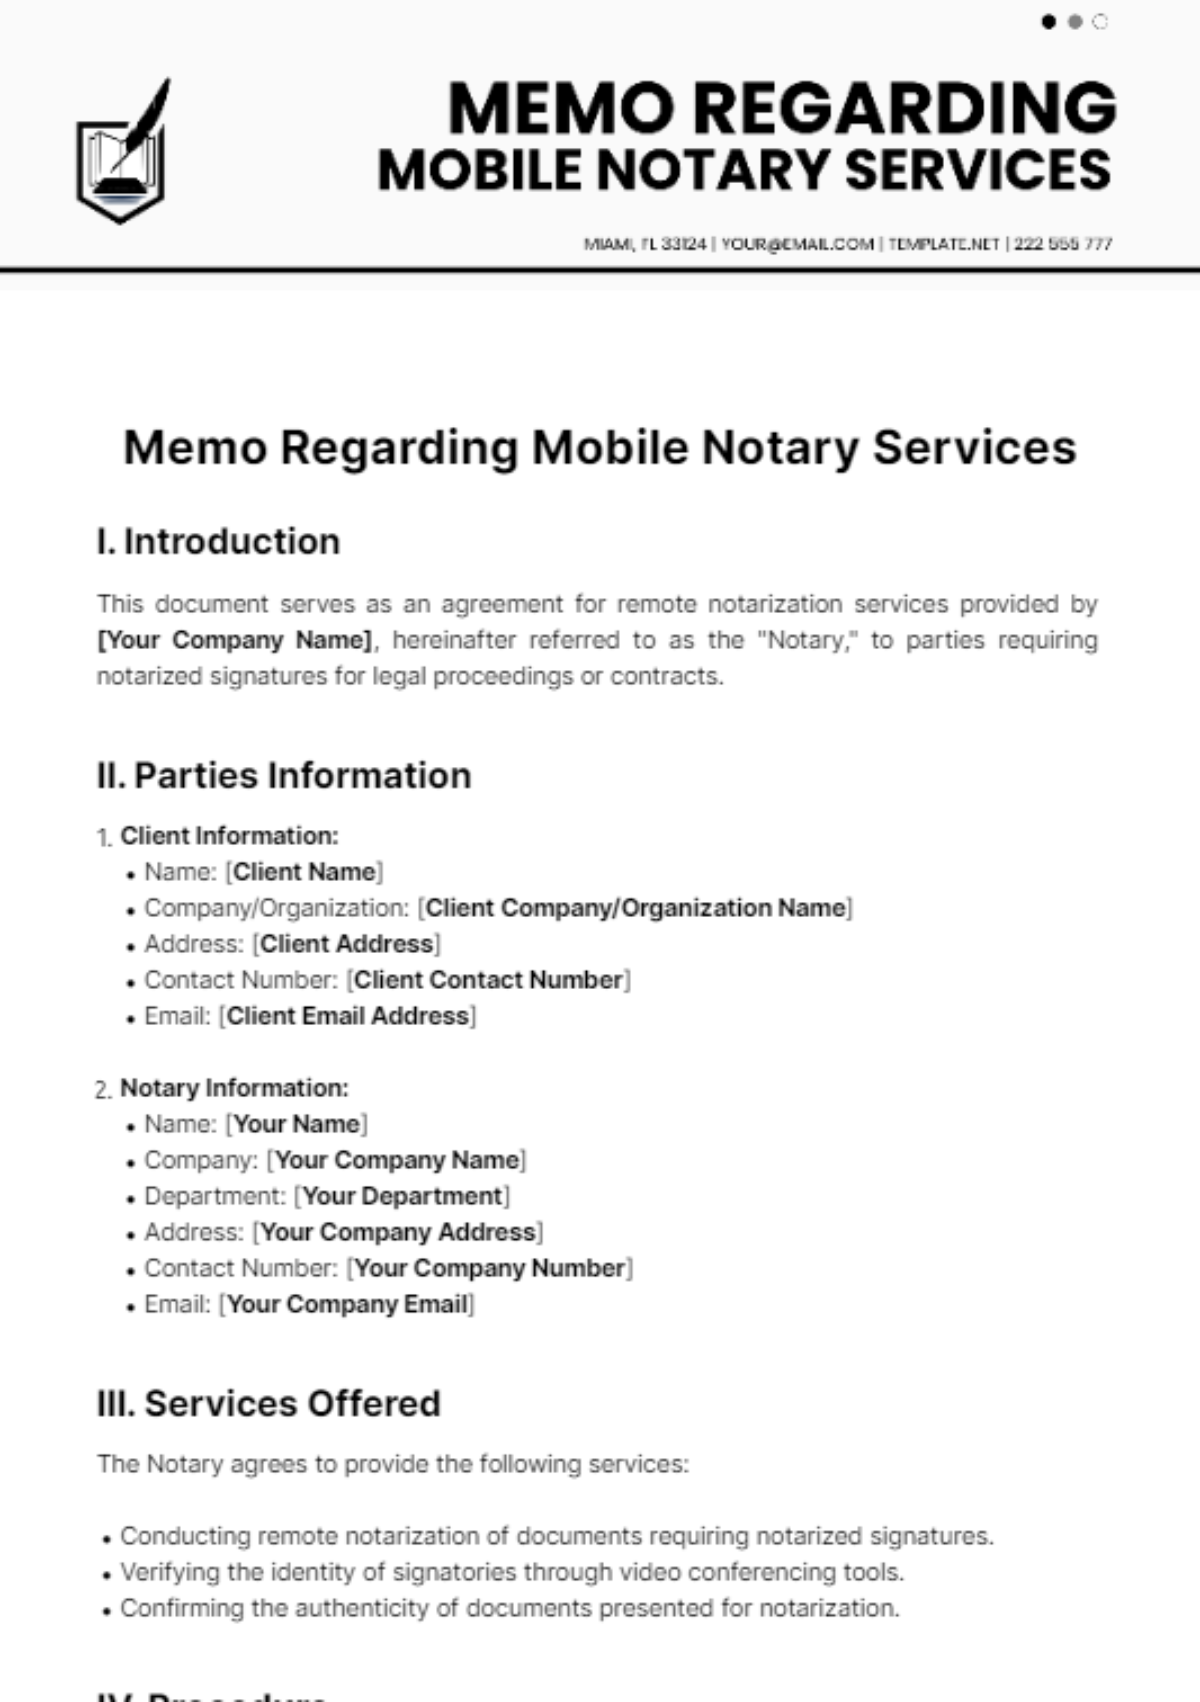 Memo Regarding Mobile Notary Services Template